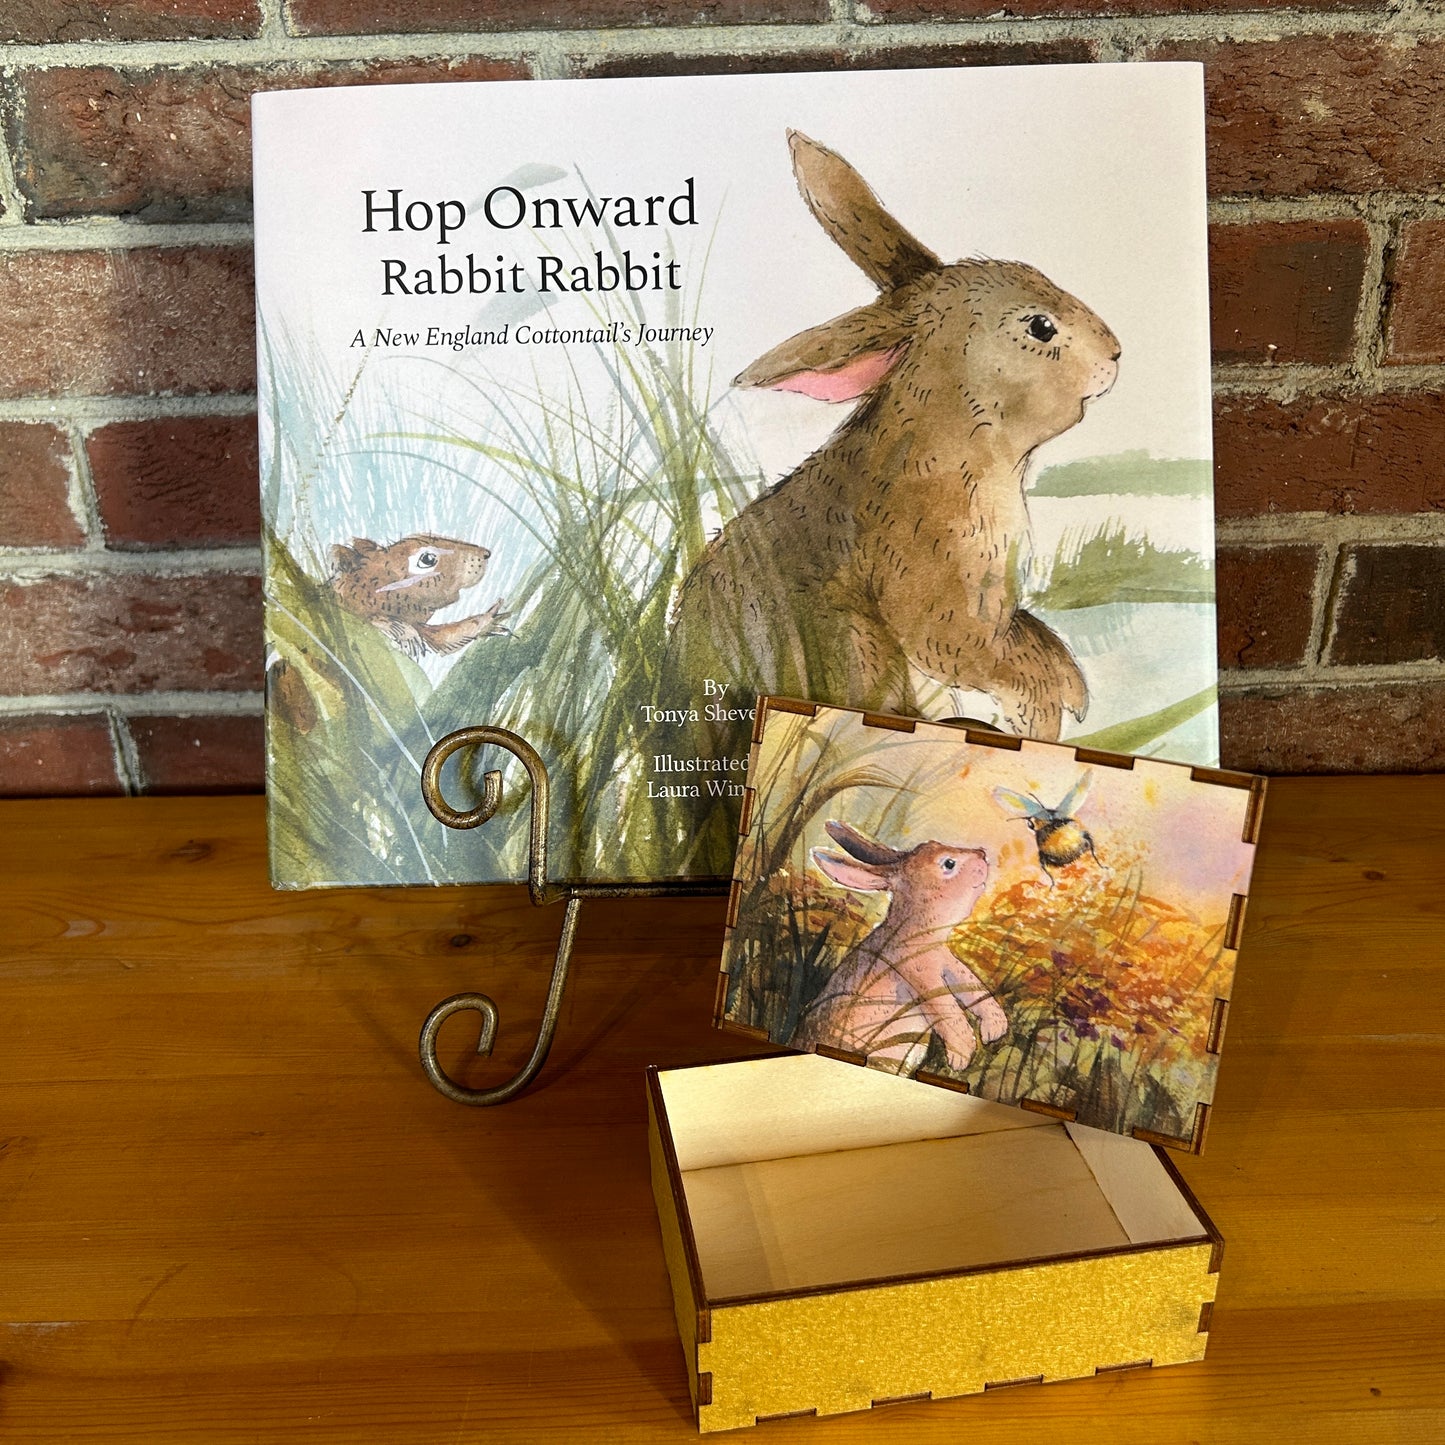 Hop Onward Rabbit Rabbit (book) and a Treasure Box bundle - Bunny and Bumble Bee box